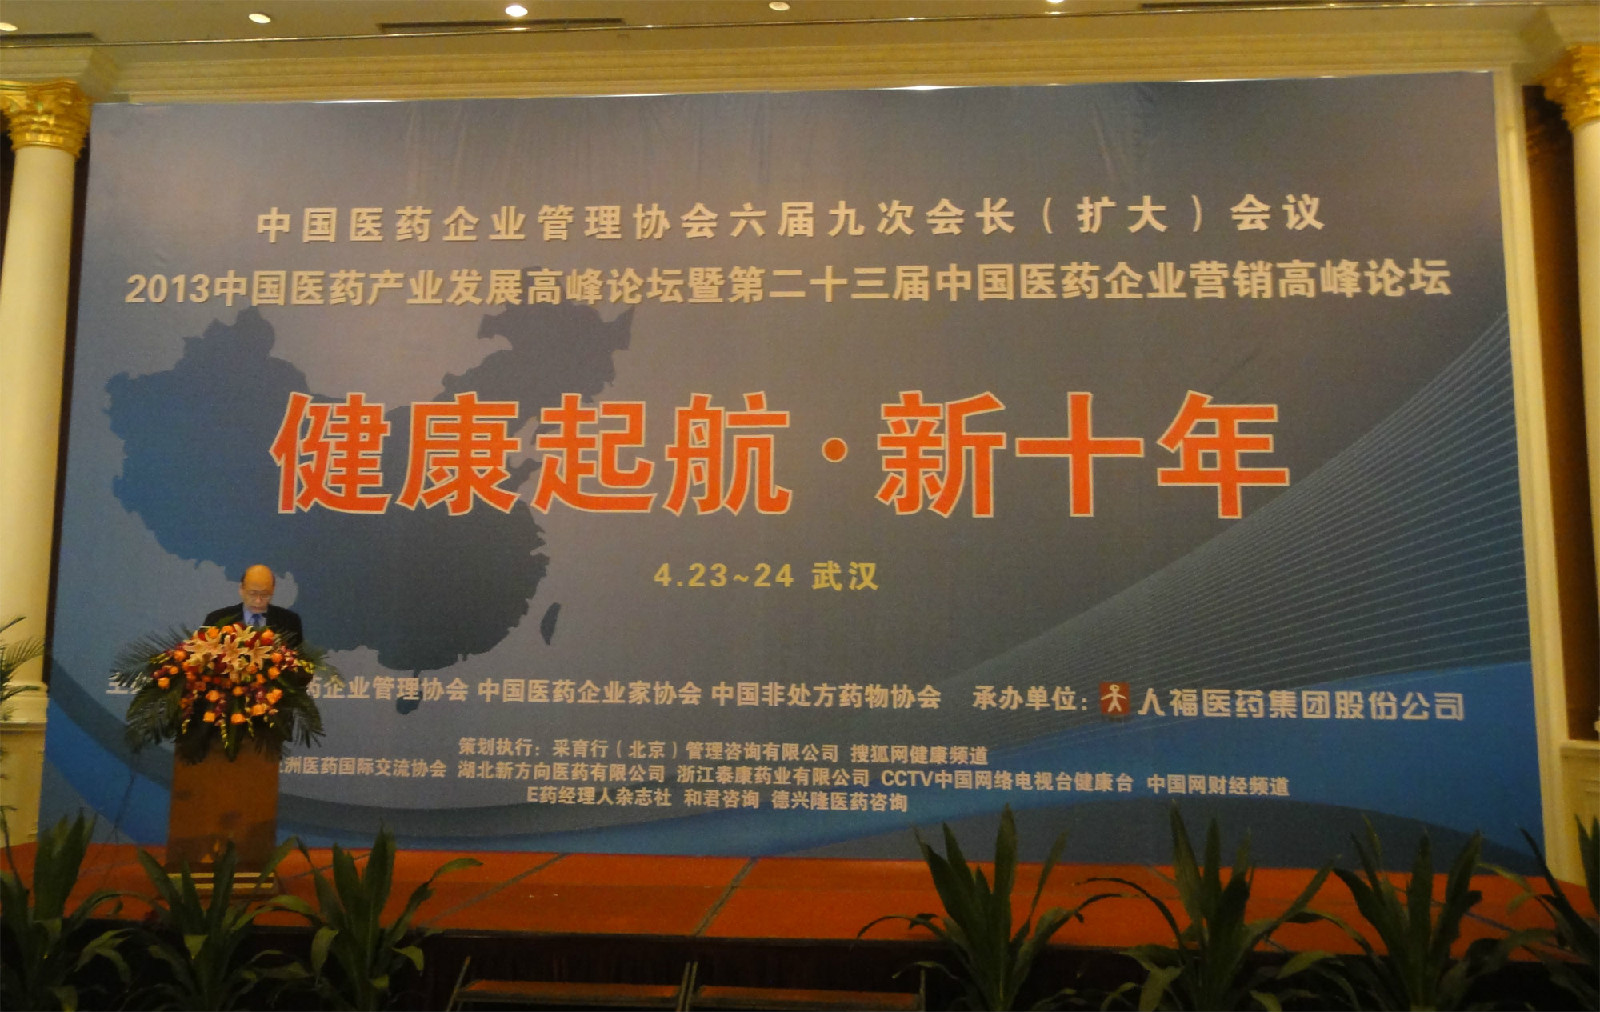 中國醫藥企業管理協會